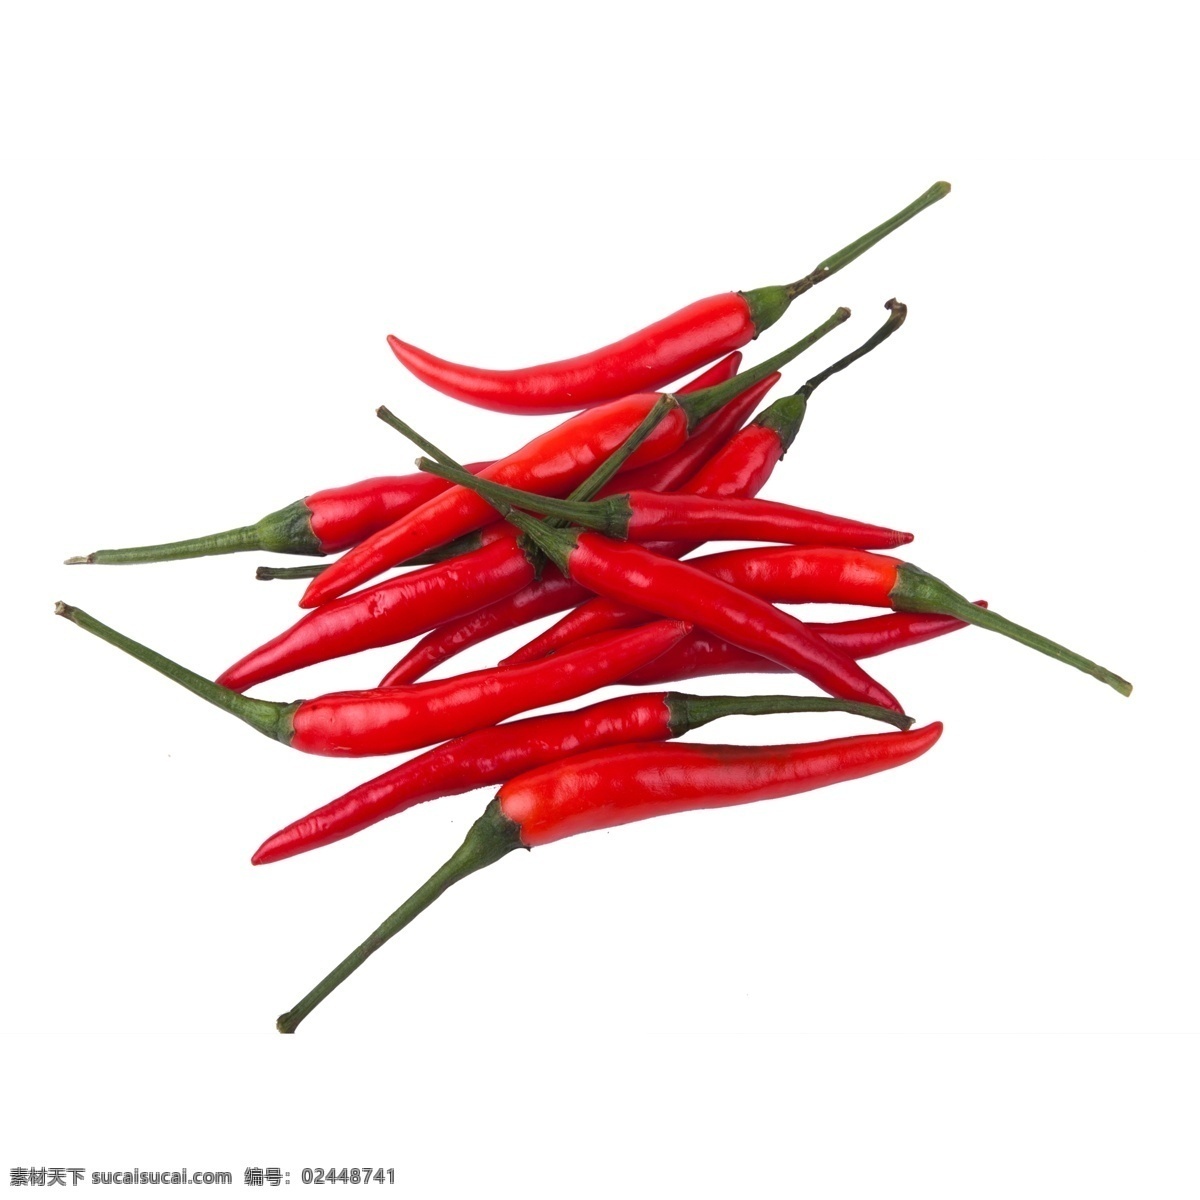 辣椒 红色 一堆 食物 吃的 蔬菜 味道 美味 光泽 闪光 调味品 生物 静物 素材图